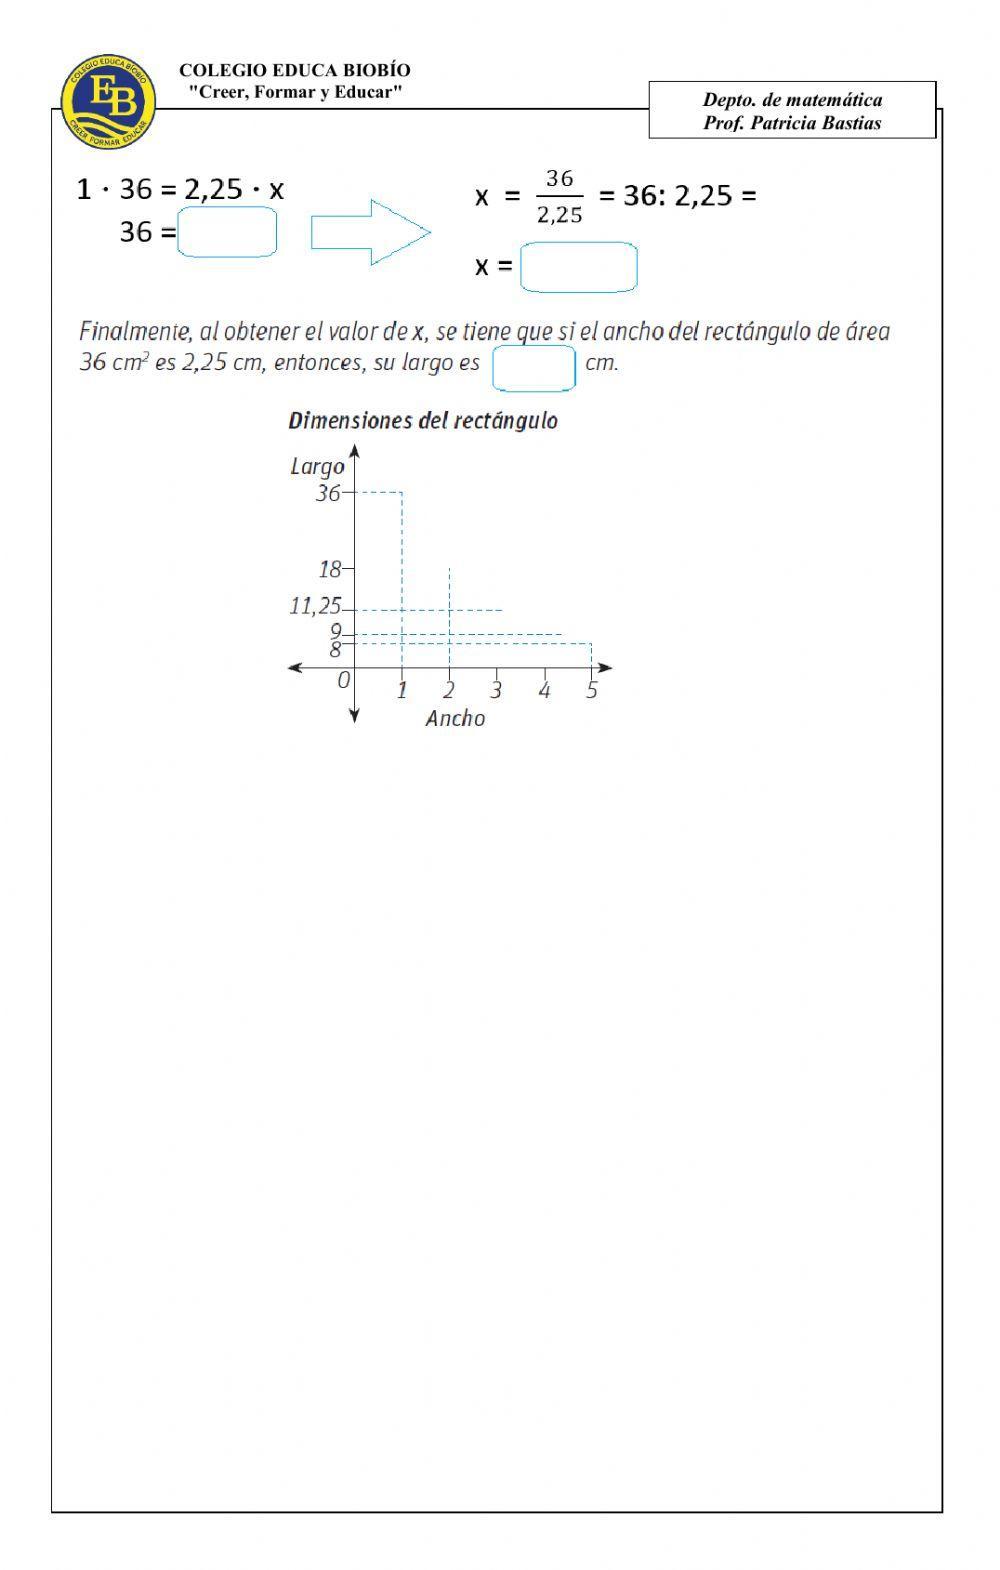 CLASE 26 Resolver problemas realizando tablas de valores para relaciones proporcionales directas e inversas